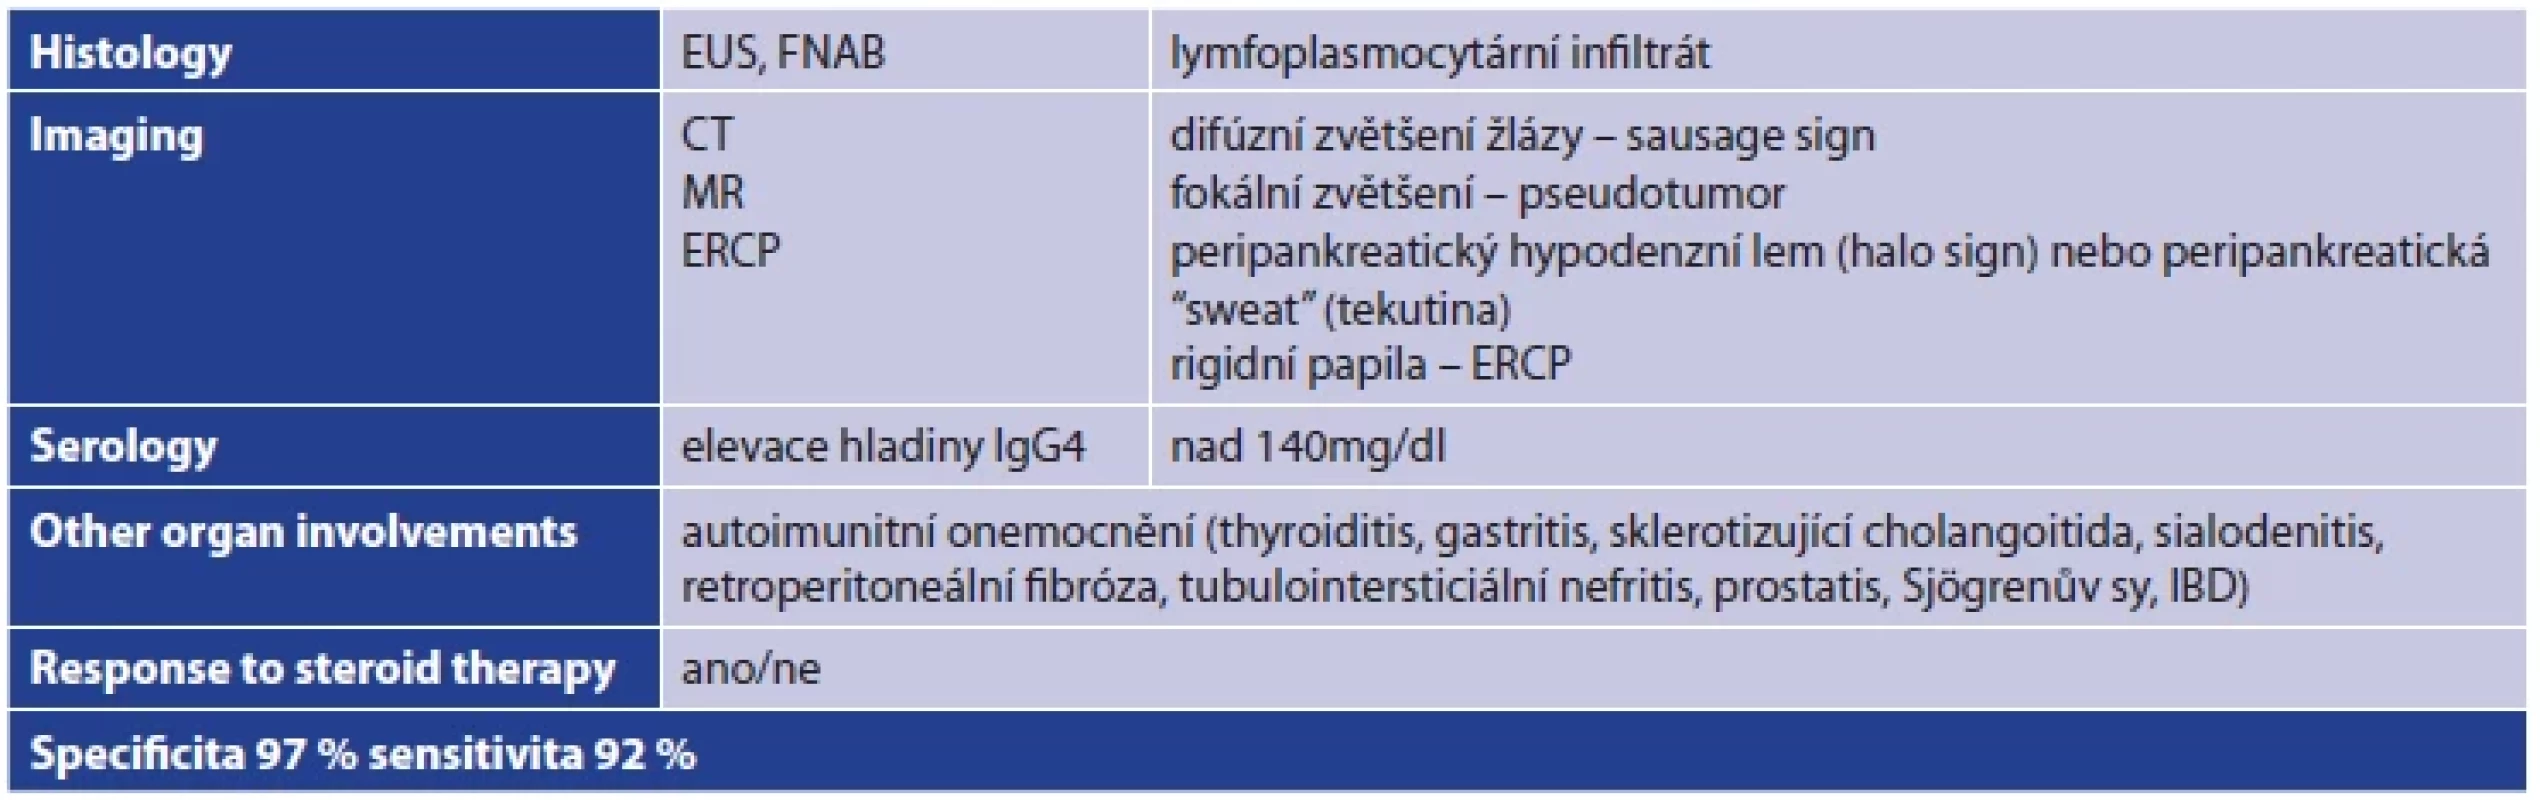 HISORt kritéria pro stanovení diagnózy autoimunitní pankreatitidy <br> 
Tab. 1: HISORt criteria for the diagnosis of autoimmune pancreatitis